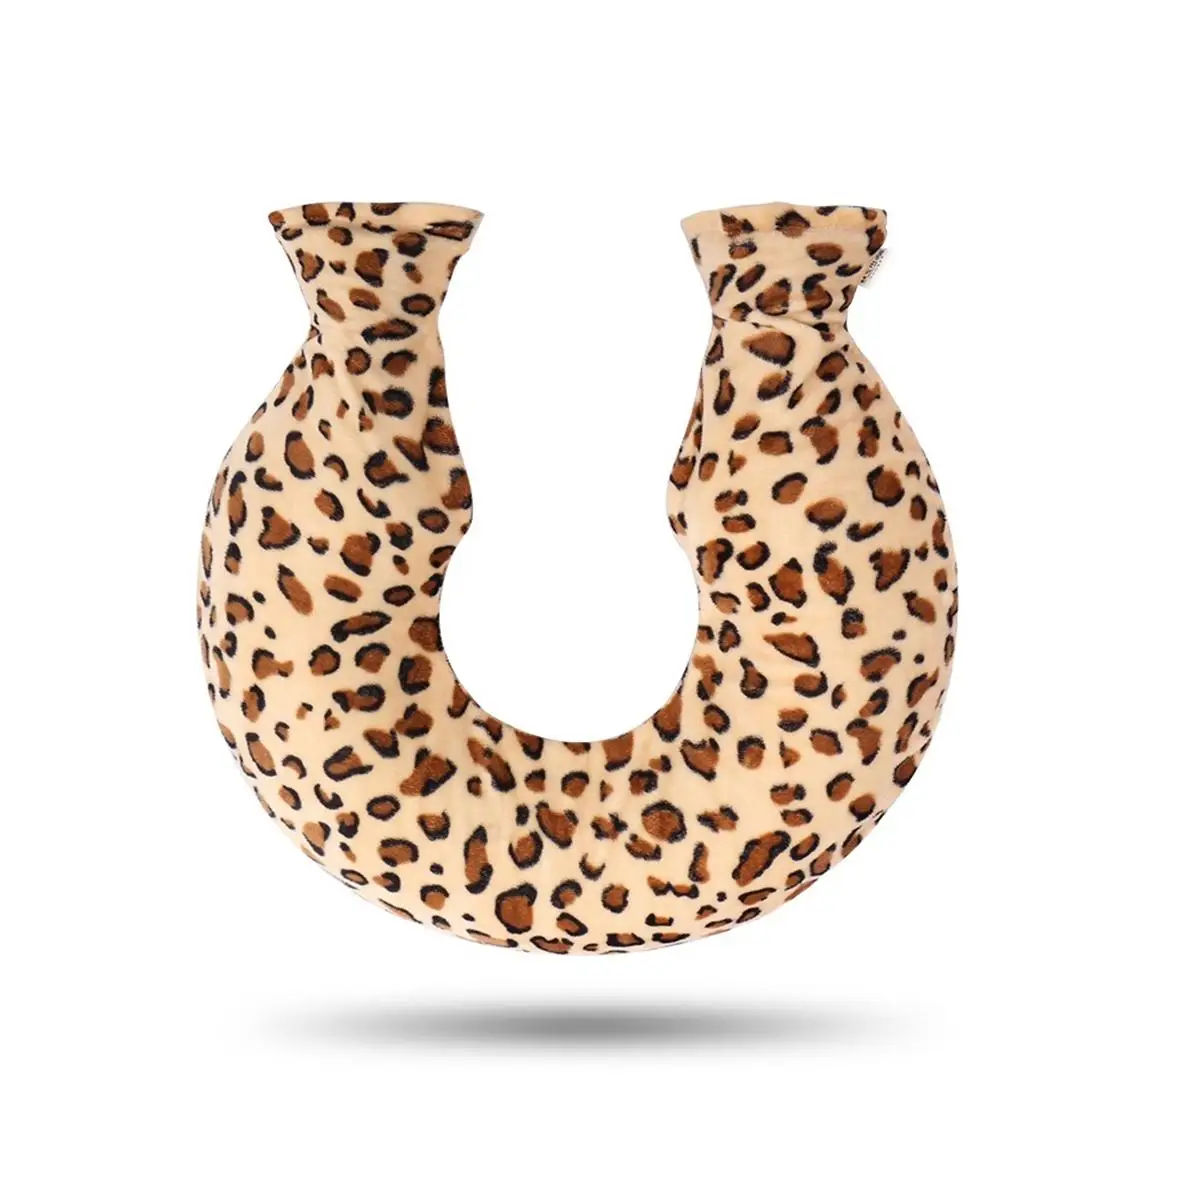 U-образная Шейная Подушка грелка из ПВХ и полиэстера, грелка для воды, грелка для шеи с мягким чехлом - Цвет: Leopard